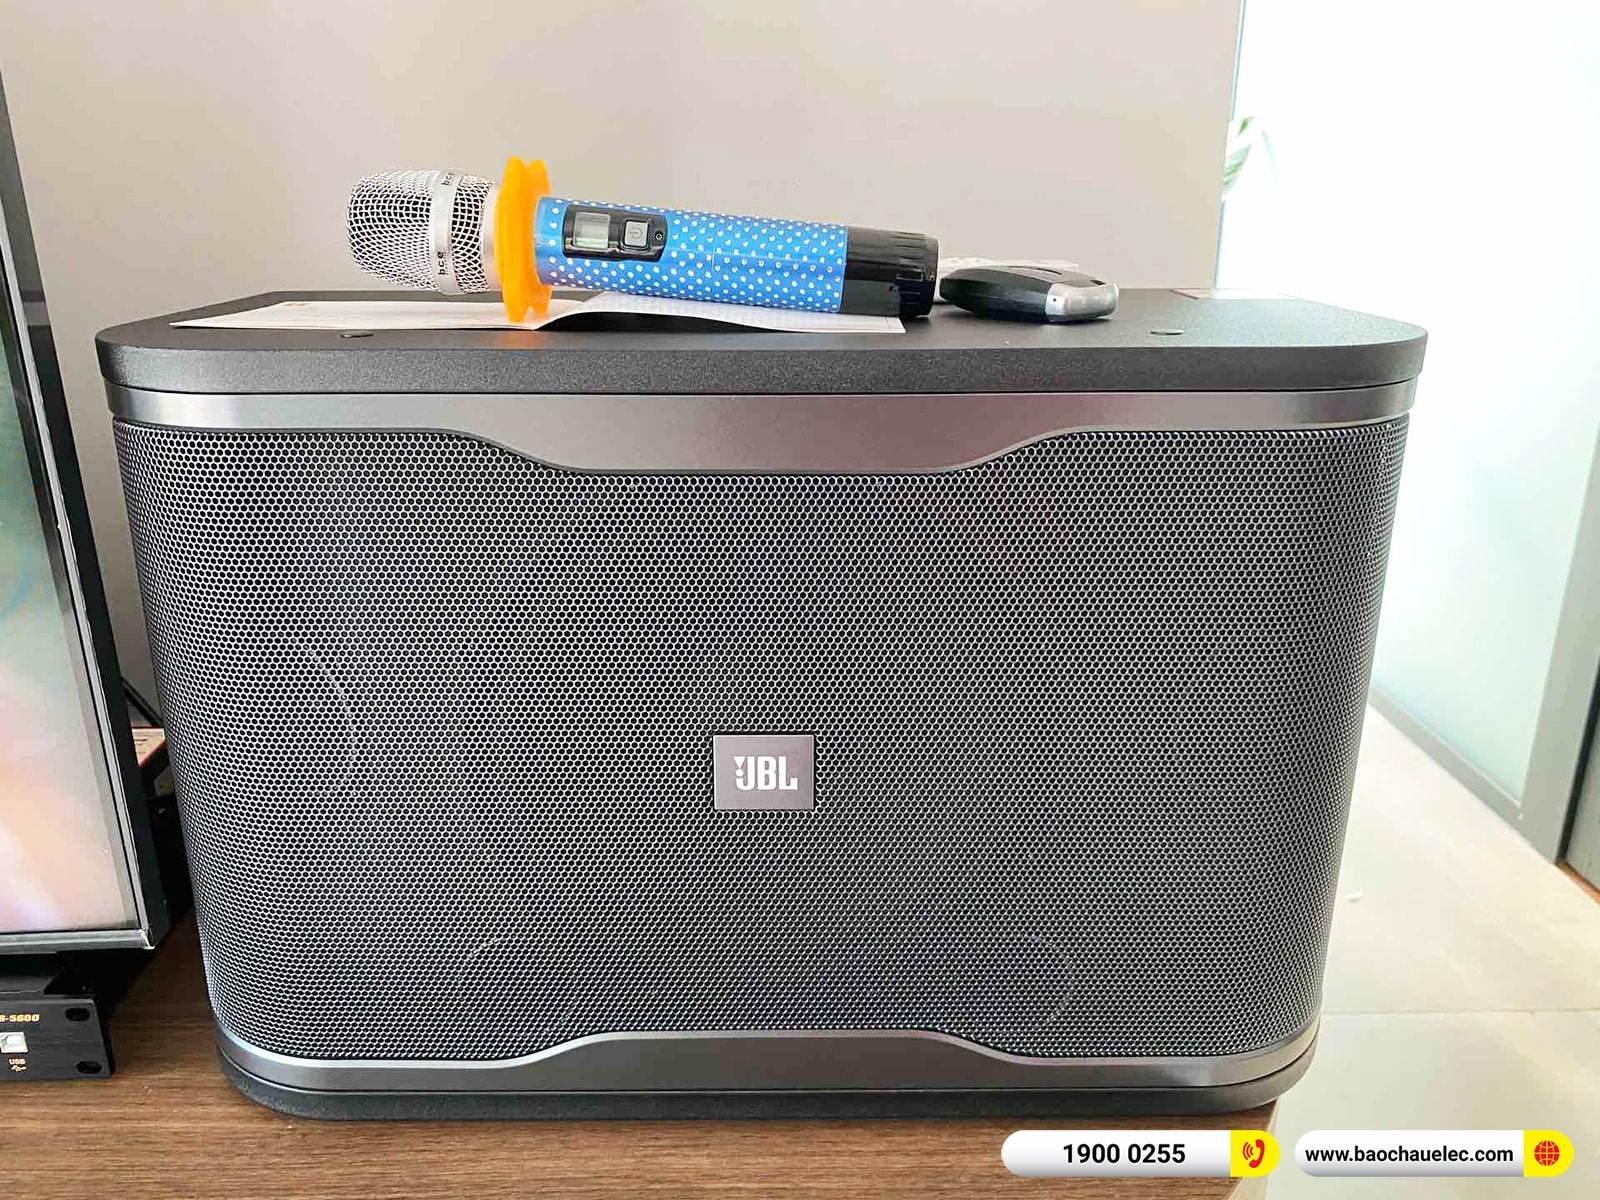 Lắp đặt dàn karaoke JBL hơn 20tr cho anh Tiến tại Đồng Nai (JBL RM210, BIK BPR-5600, UGX12 Luxury)